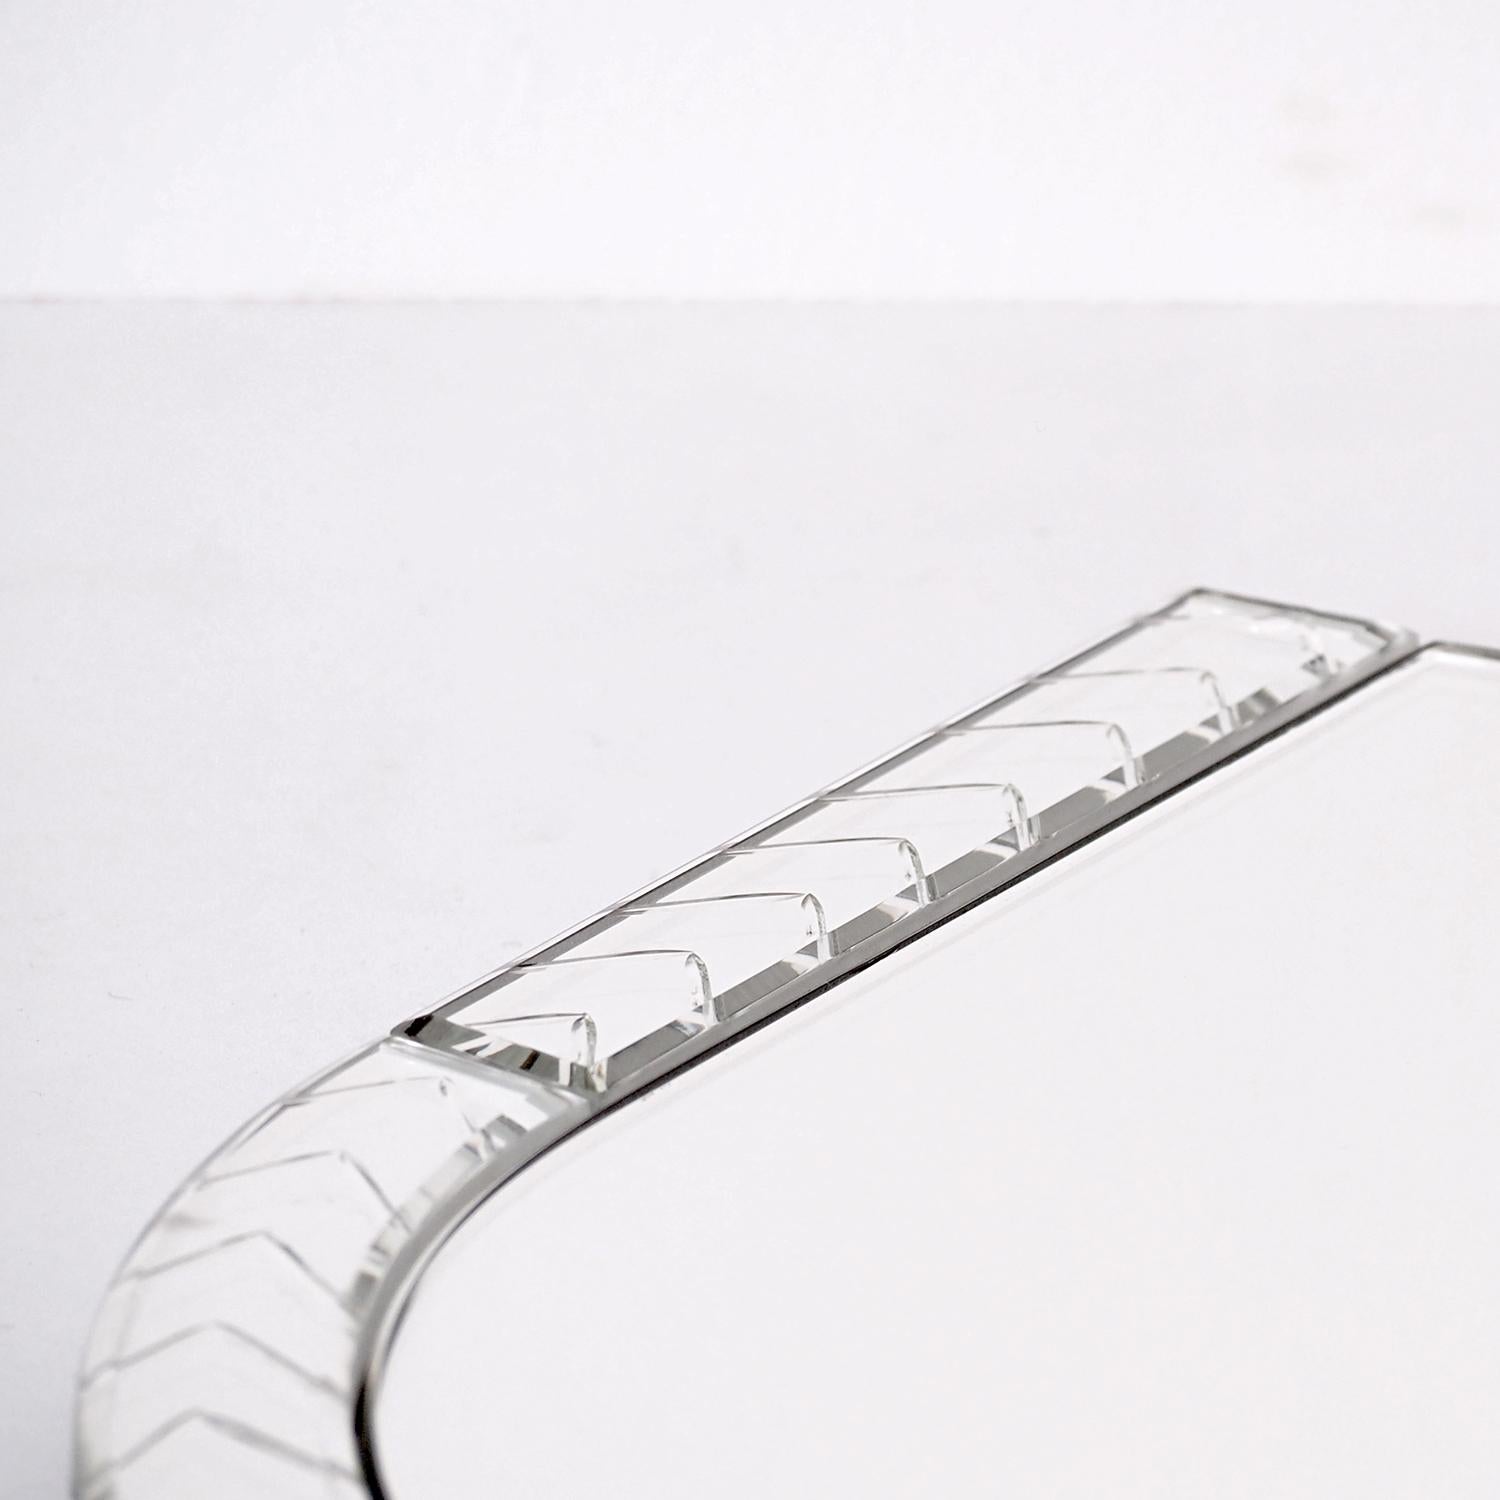 Elemento DUE ist einer der Spiegel aus massivem Glas der Muranoglas-Kollektion voller Tiefe und kühner grafischer Linien, die auf der venezianischen Insel fachmännisch von Hand gefertigt werden.

In Zusammenarbeit mit den erfahrenen Glaskünstlern